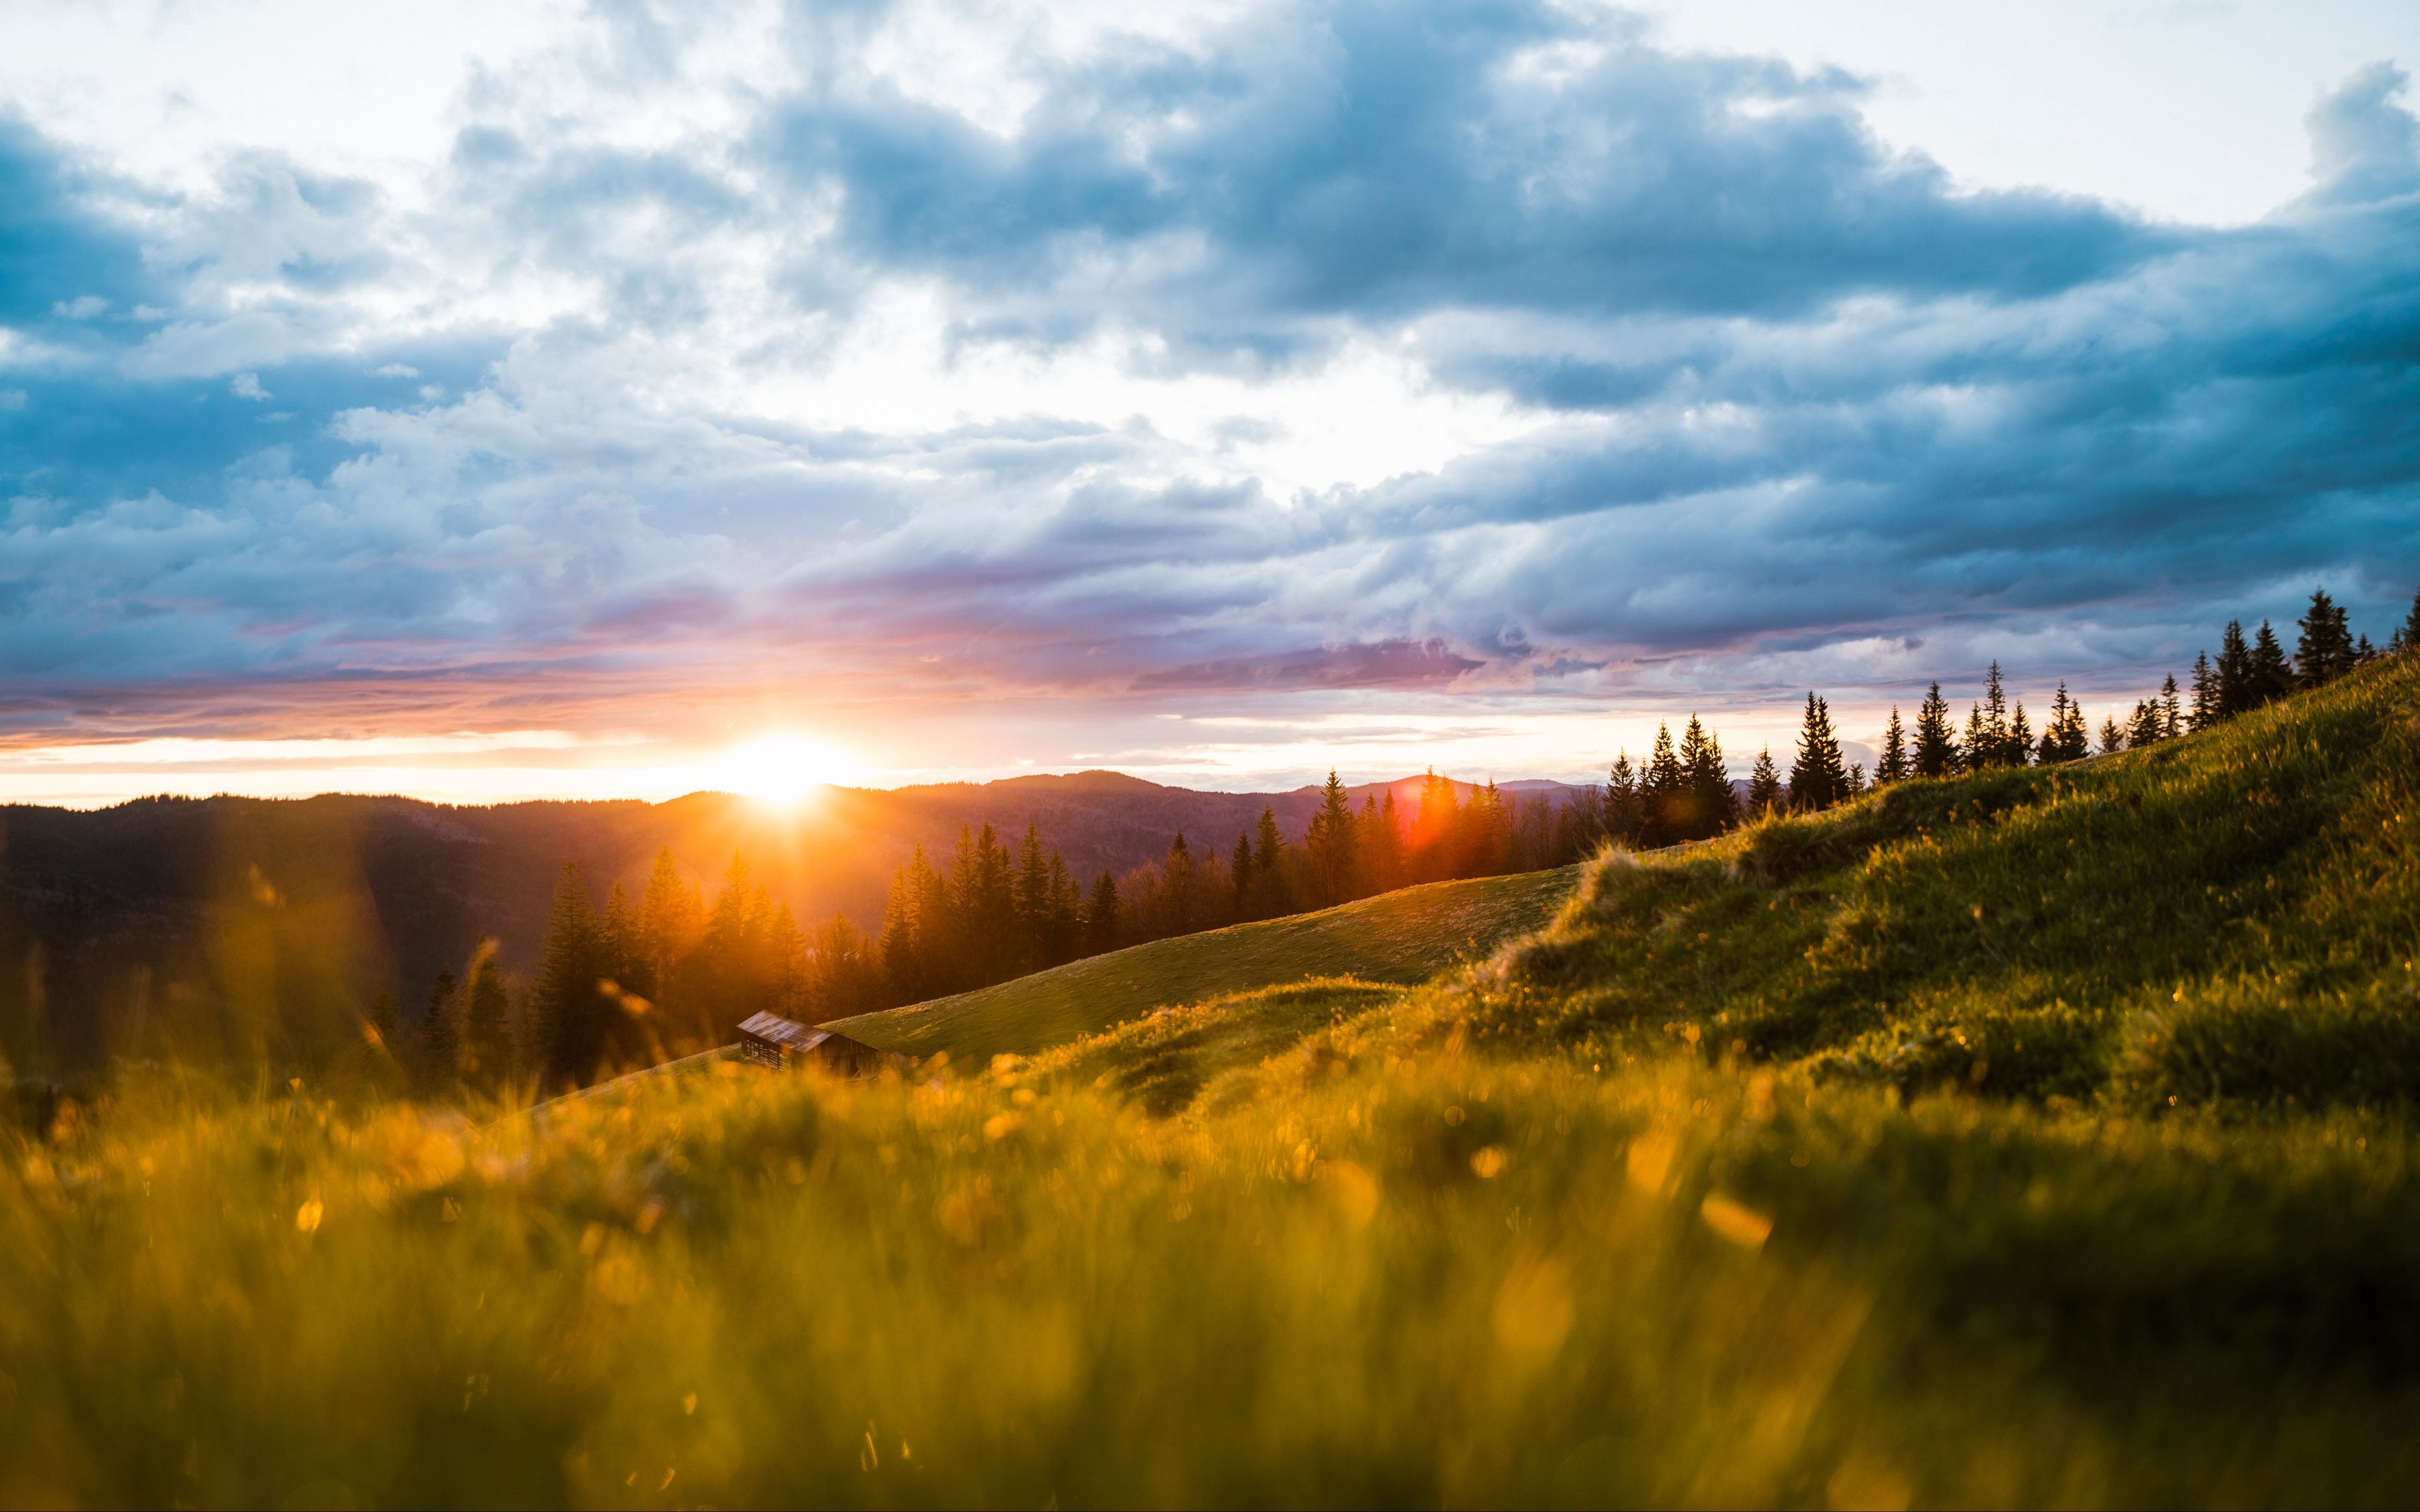 Hãy đưa cảnh đẹp mê đắm vào màn hình máy tính của bạn với hình nền phong cảnh, núi, mặt trời, đồng cỏ, độ phân giải 3840x2400 siêu nét này. Được chụp với chất lượng cao, nó chỉ đơn giản là một trong những hình nền tuyệt vời nhất dành cho những người yêu thiên nhiên.